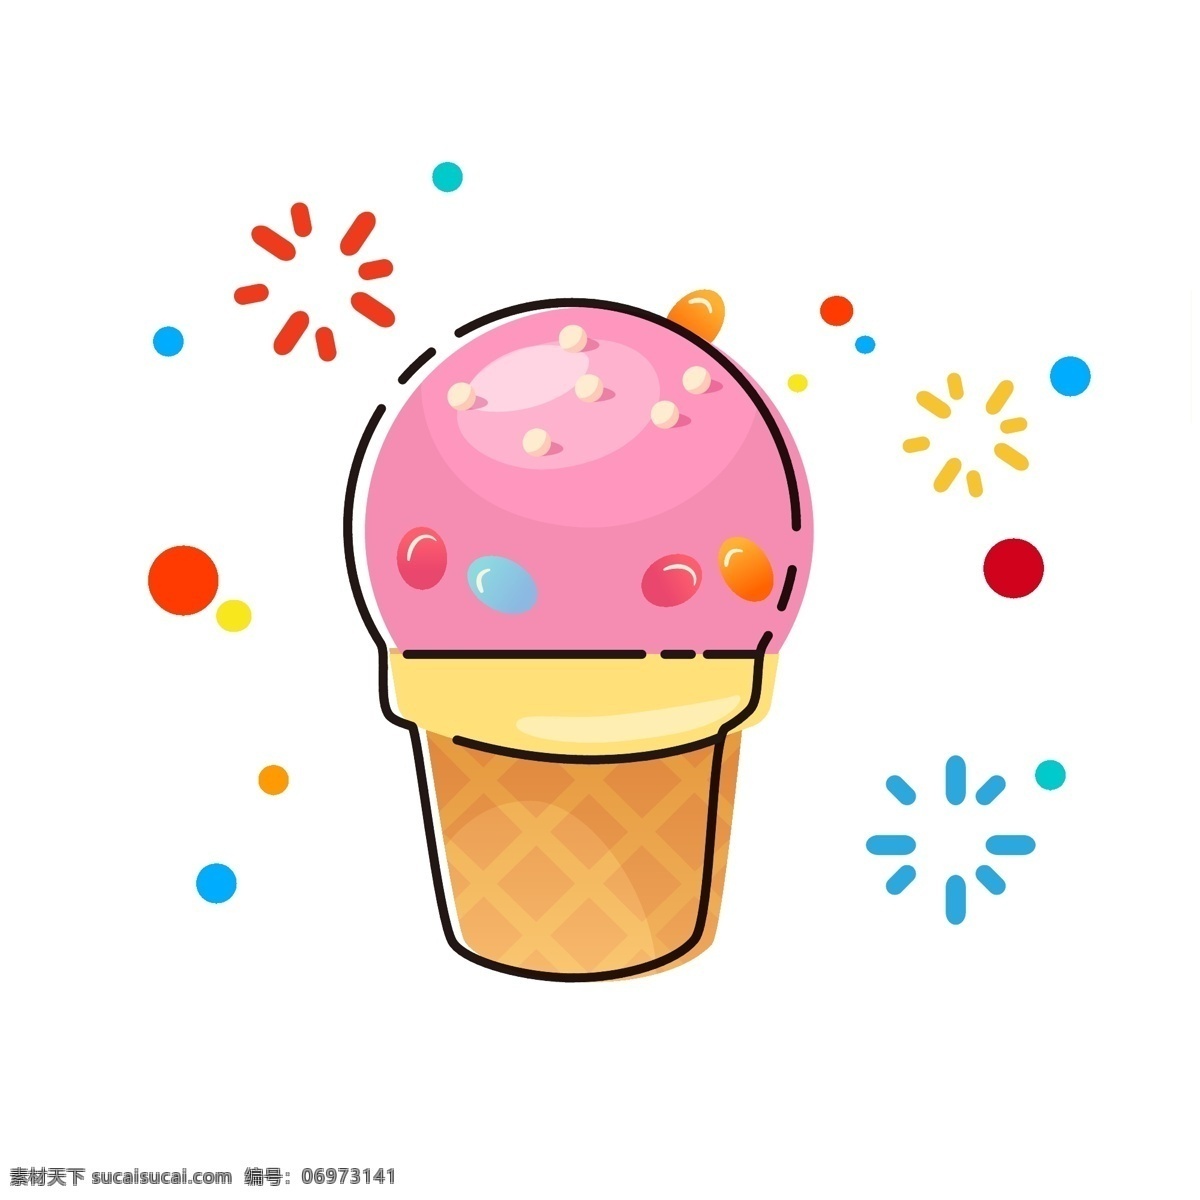 mbe 卡通 手绘 冰淇淋 食物 美食 可爱